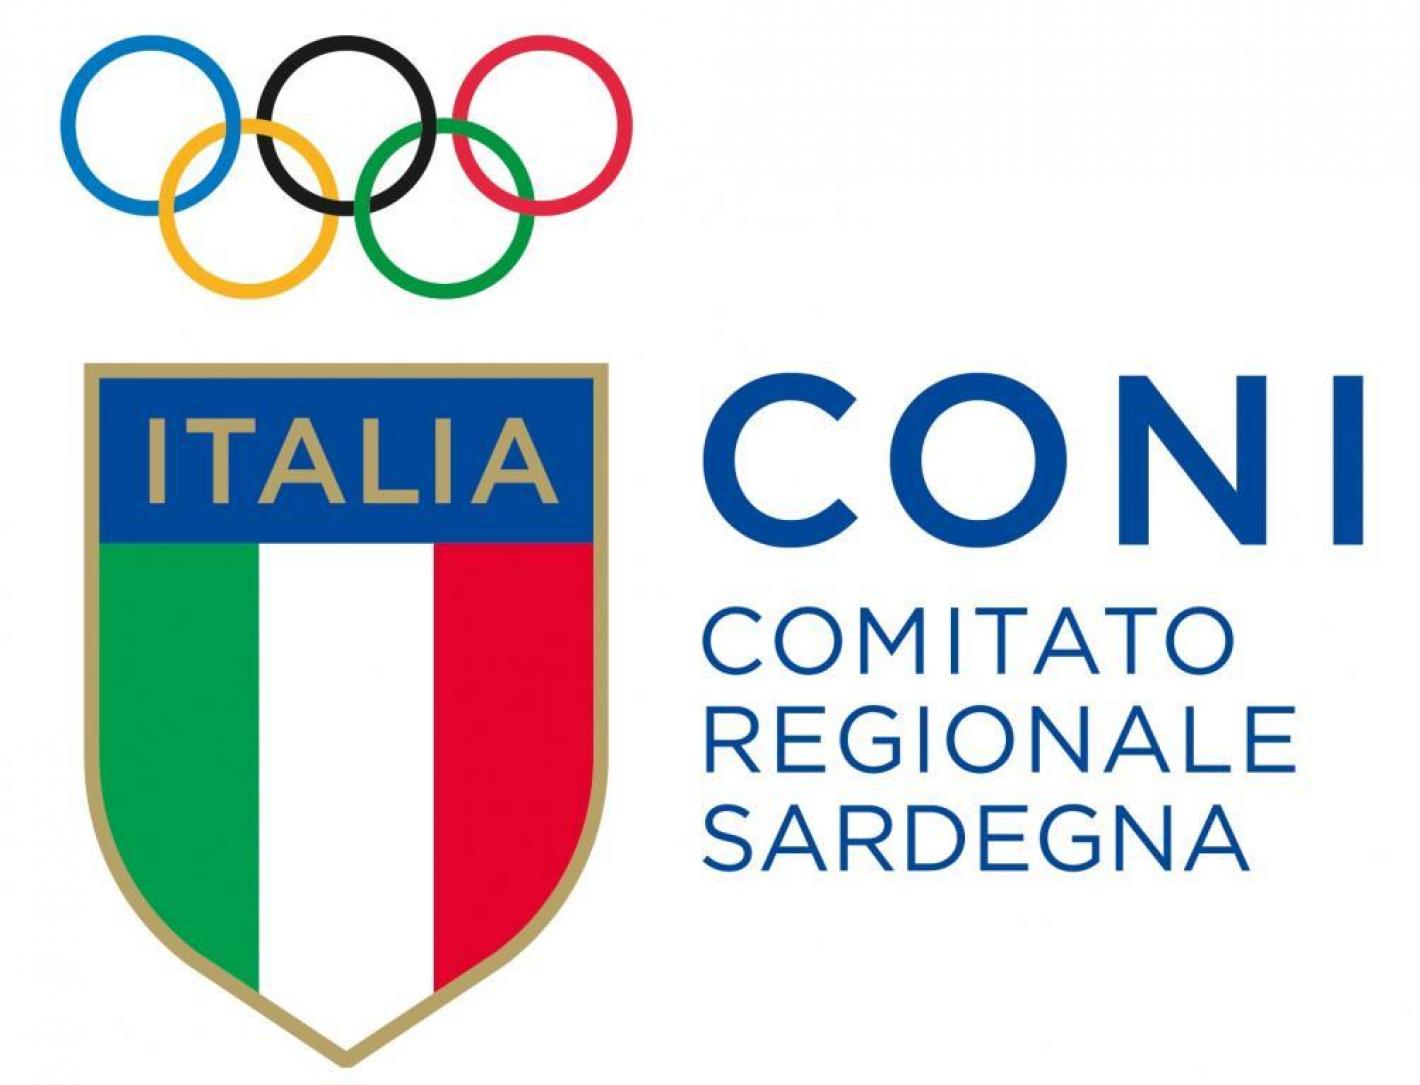 images/sardegna/-NEWS/Coni-SportESalute/medium/CONI_CR_SARDEGNA.jpg